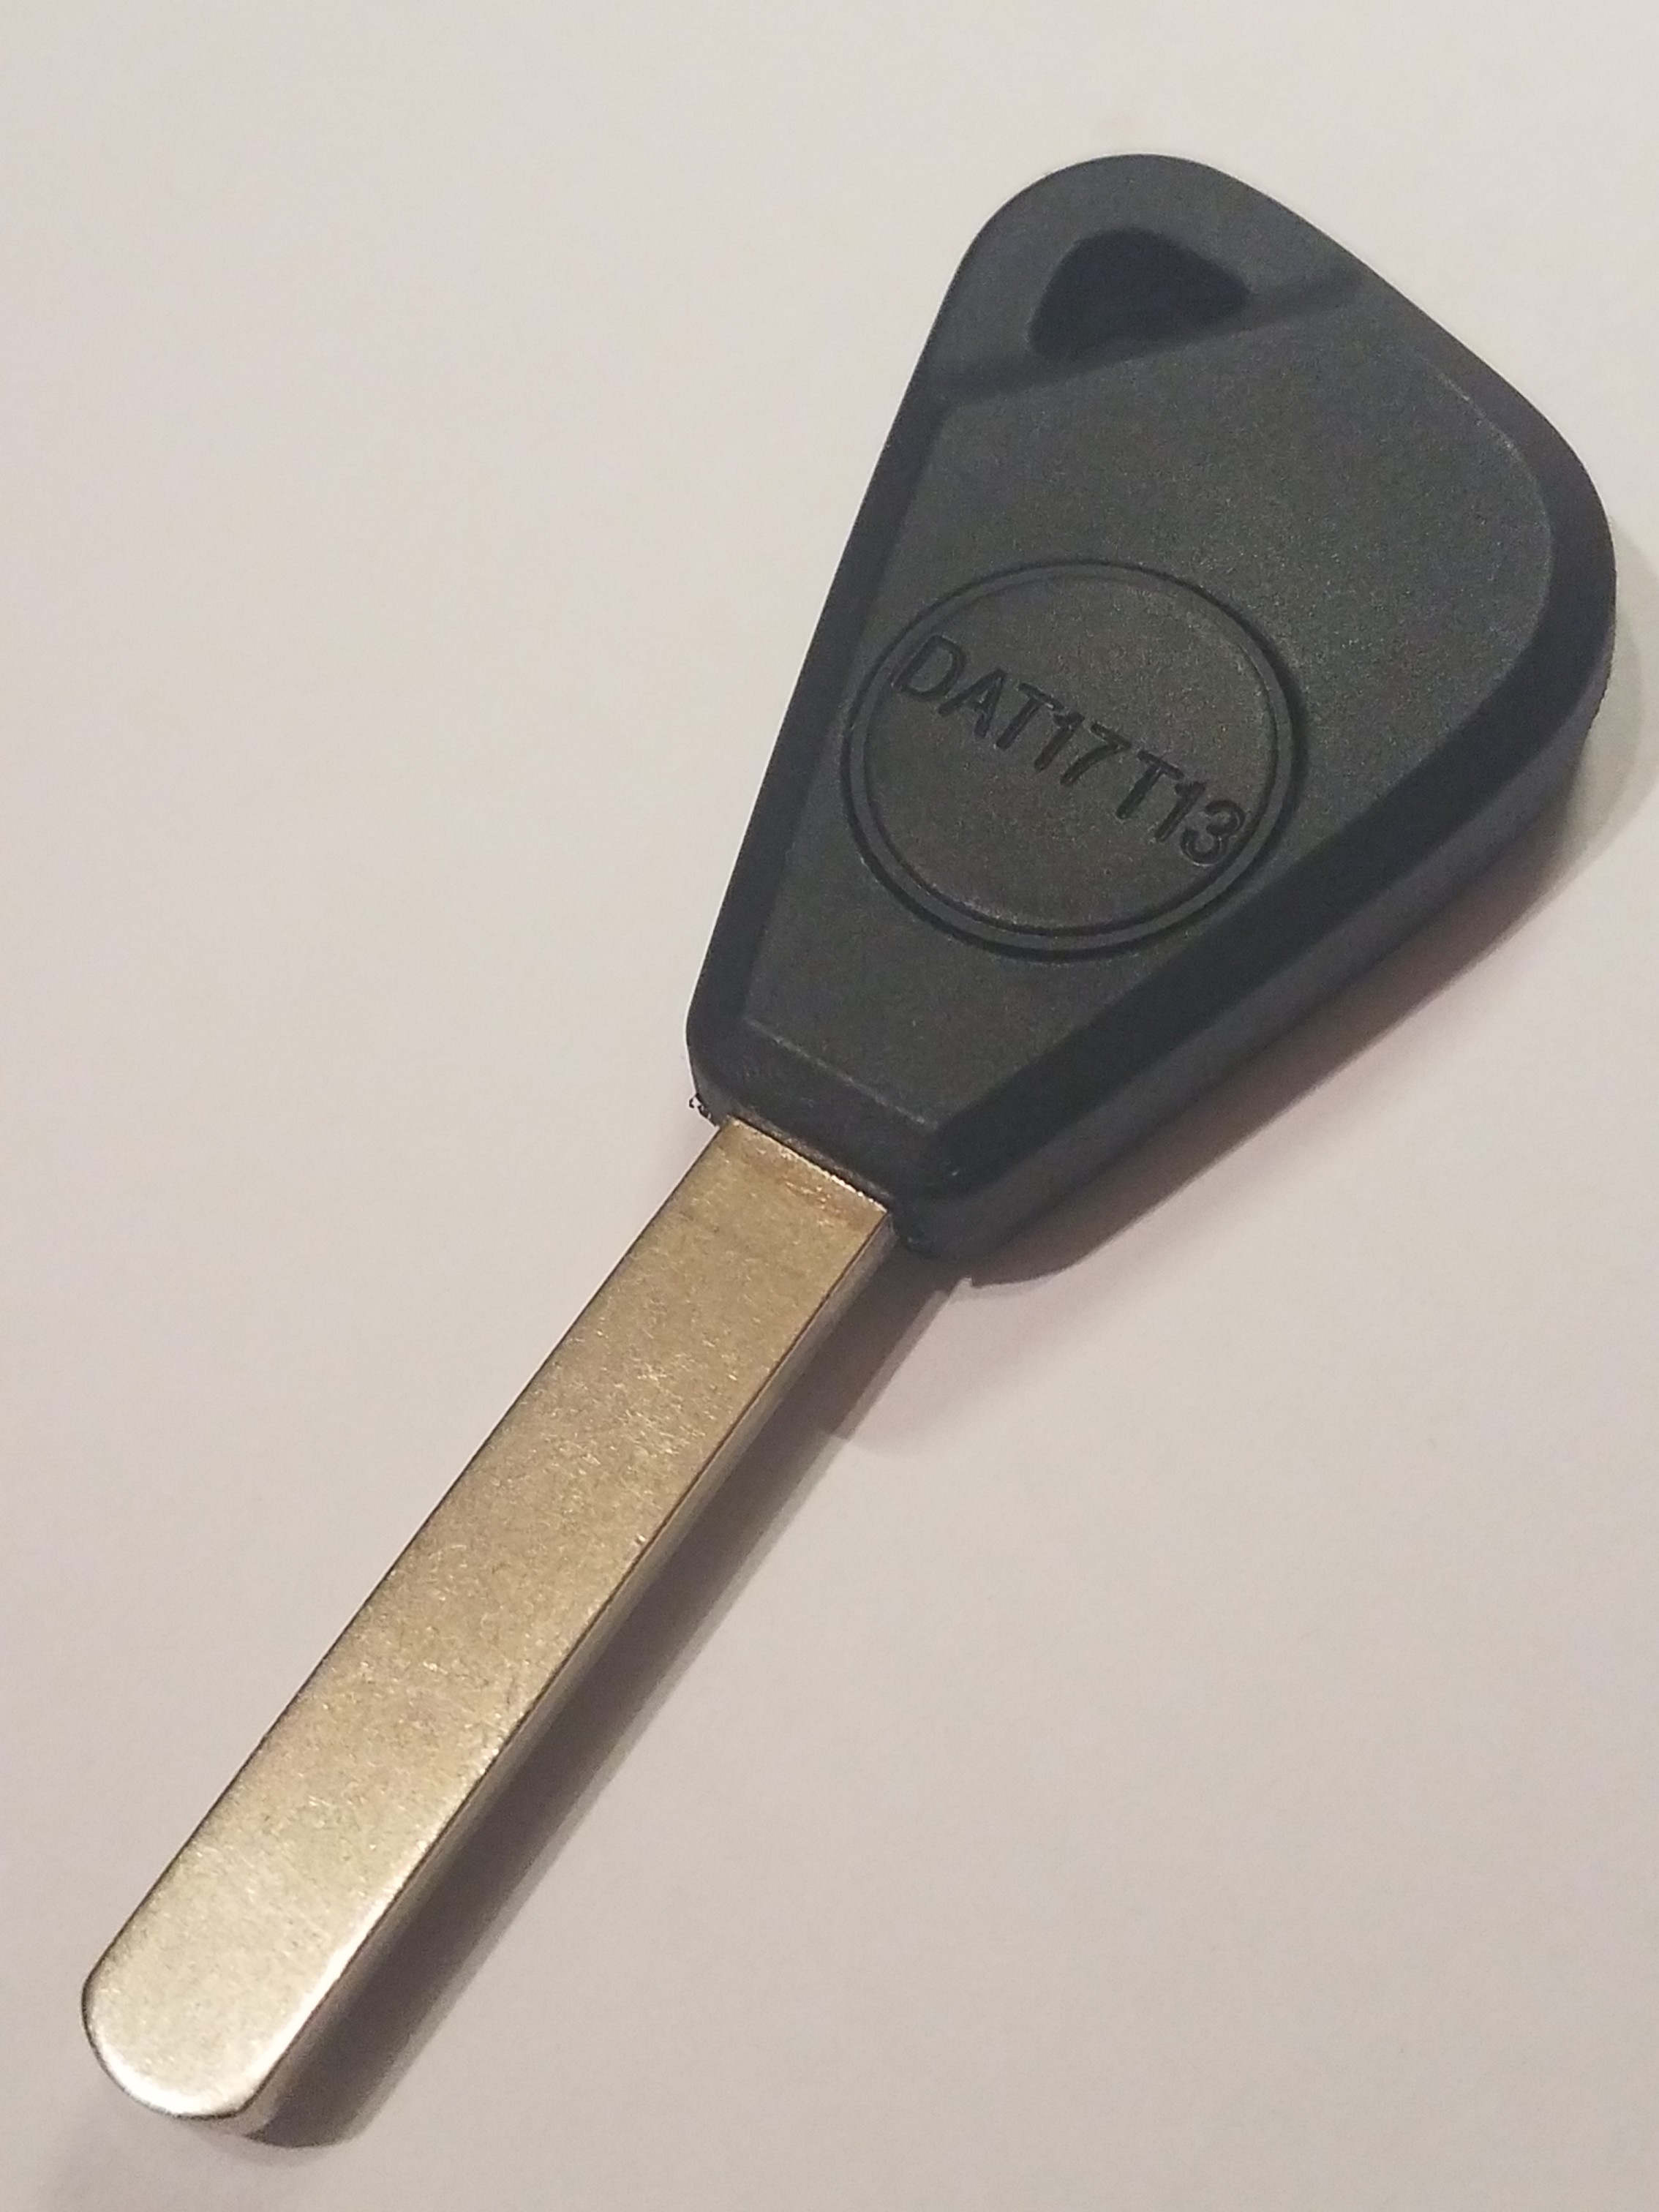 Subaru key replacement